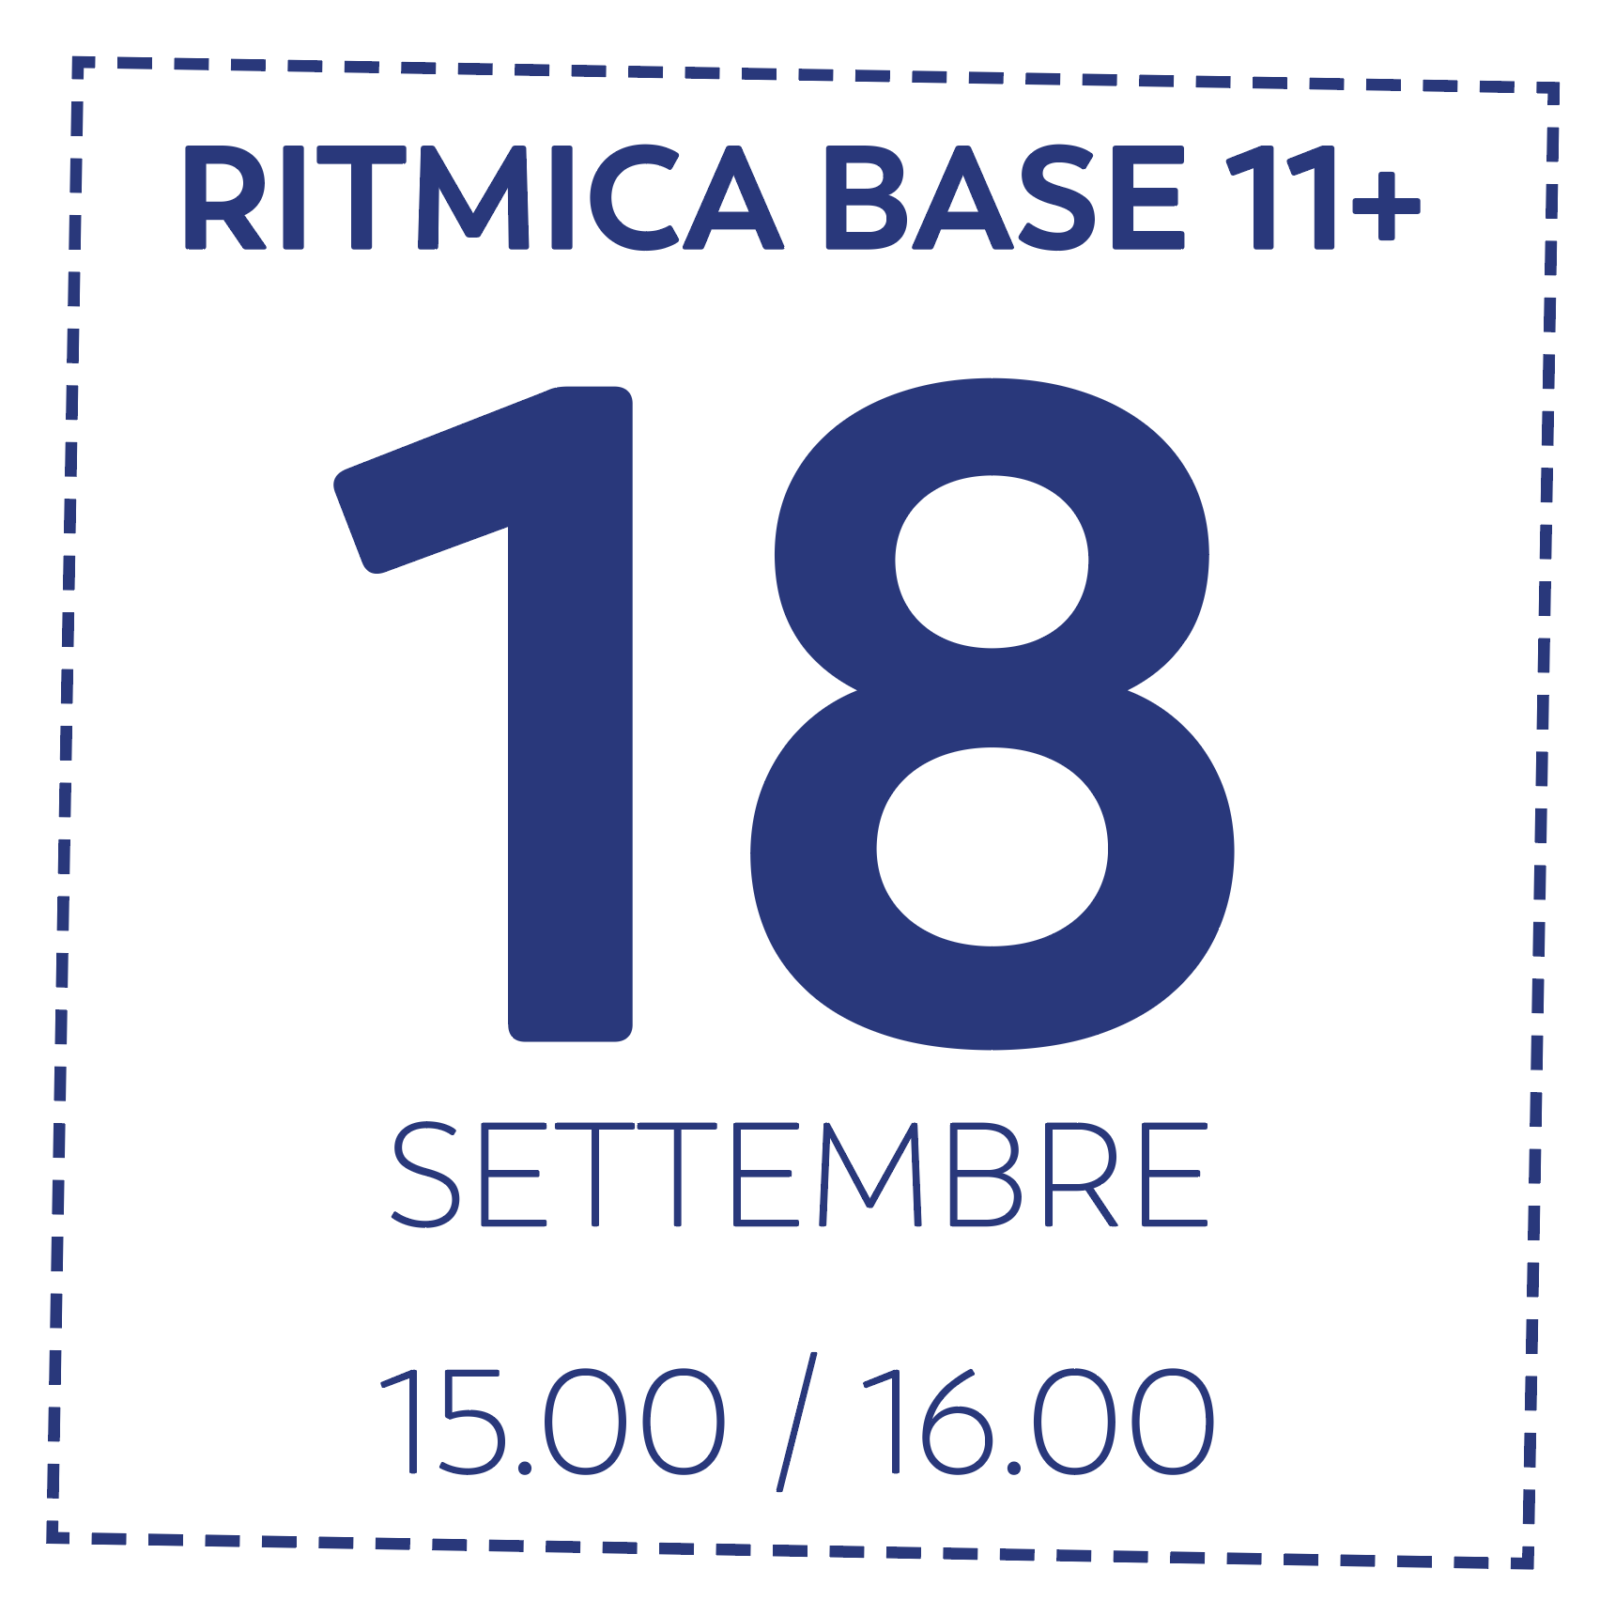 OD RITMICA BASE 11+ - 18/9